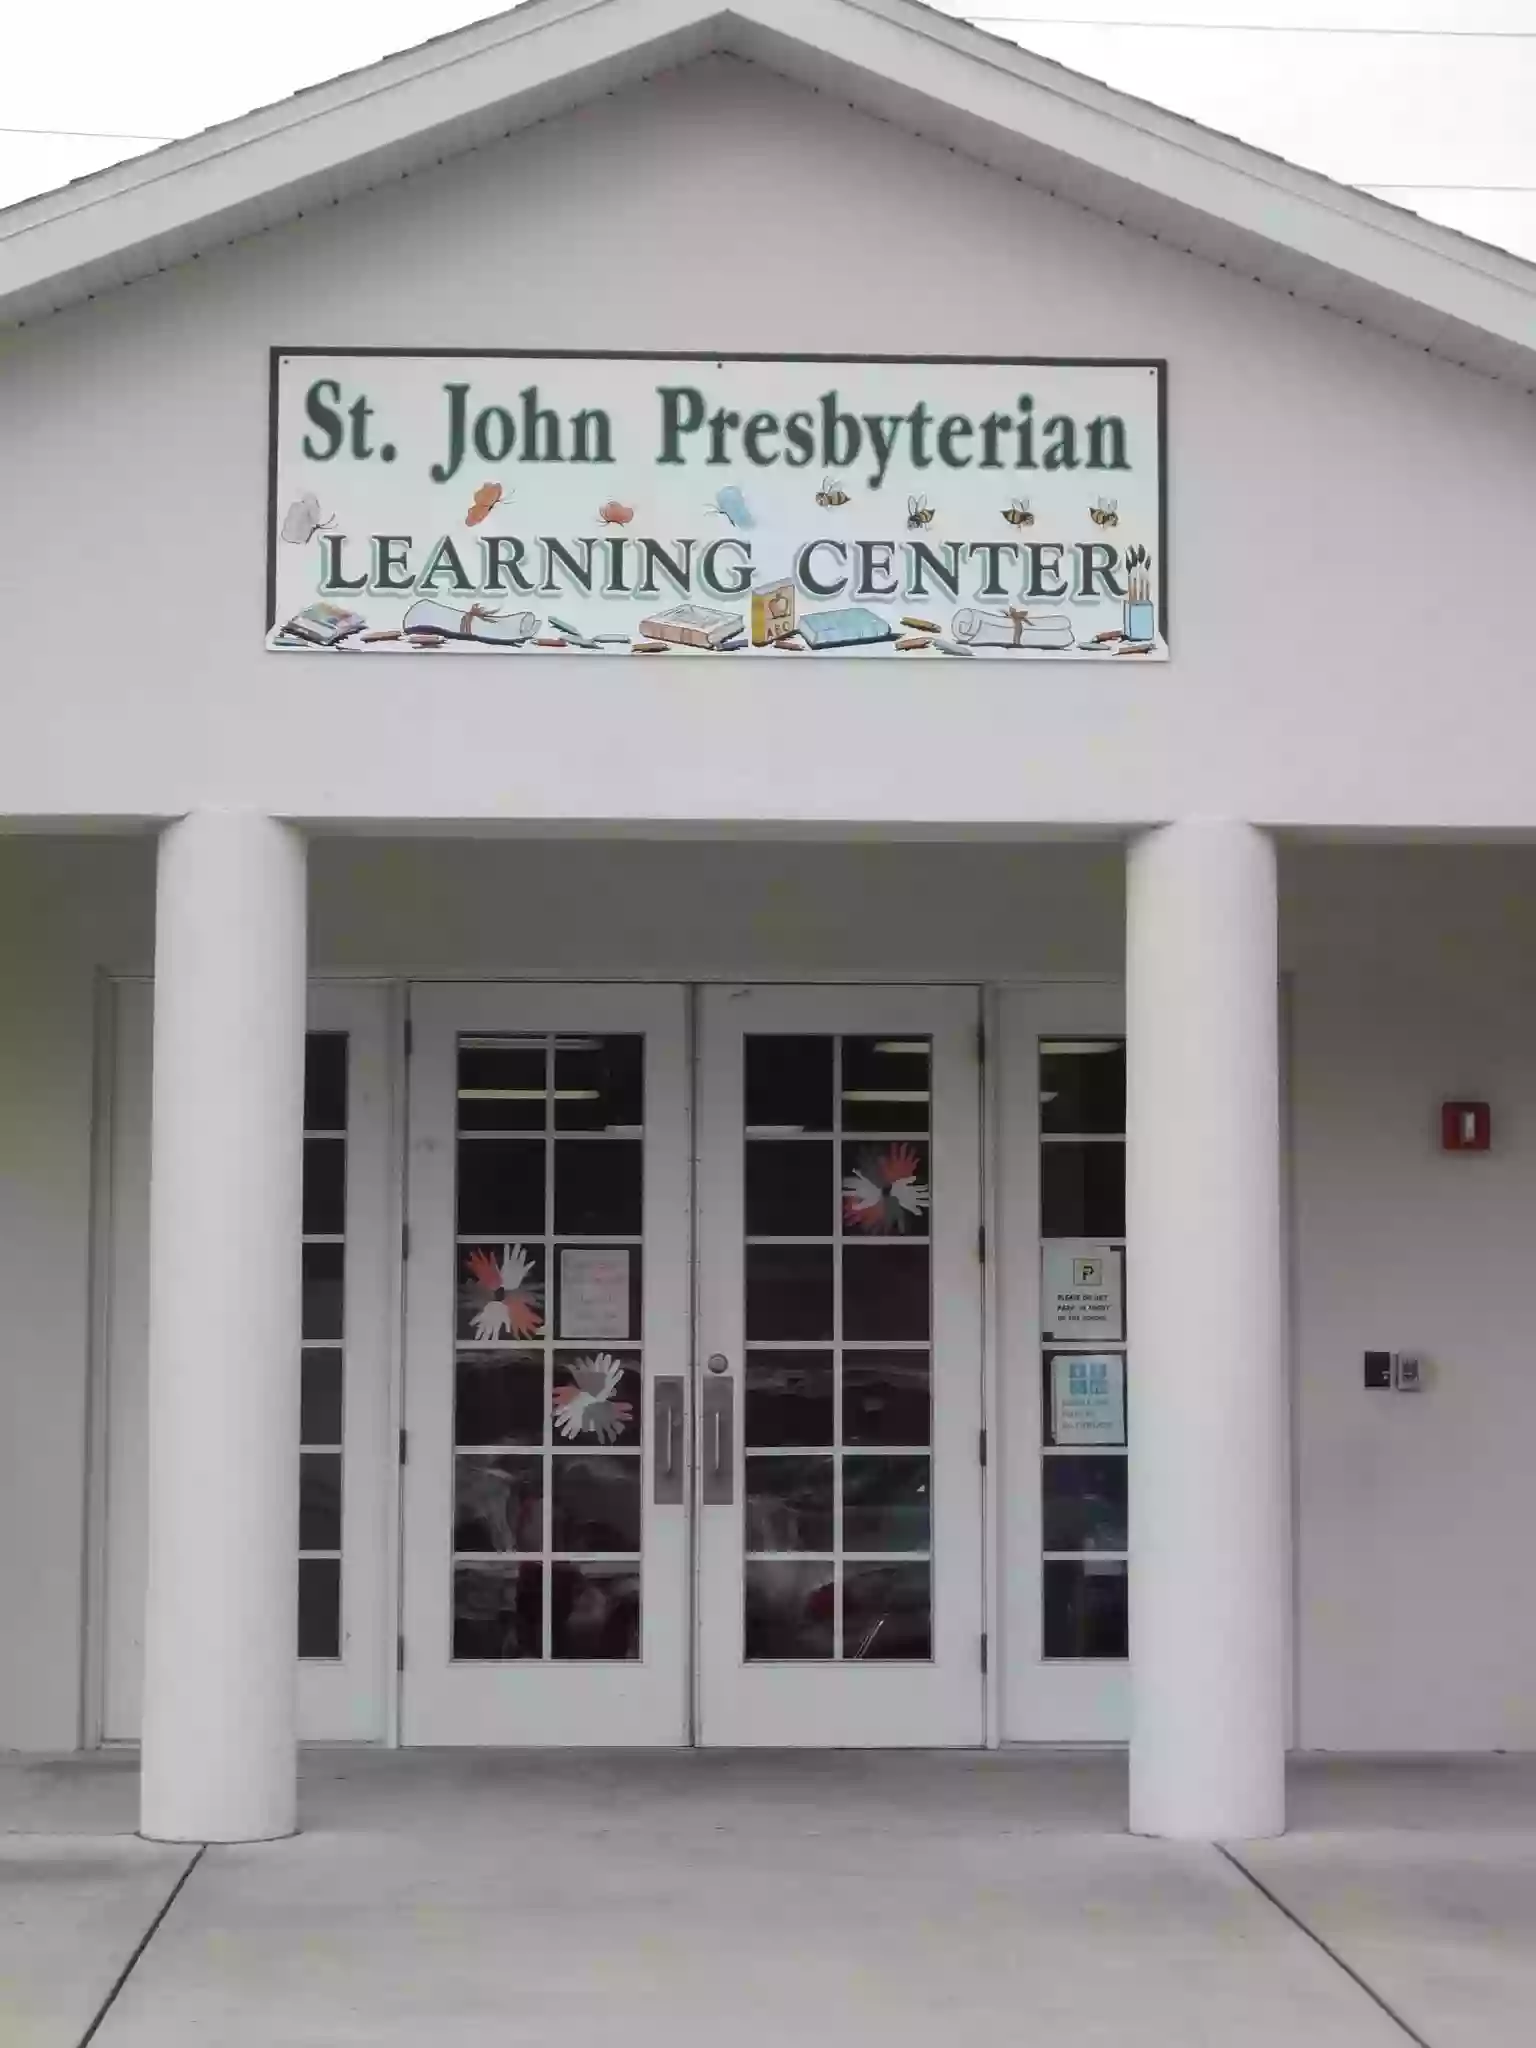 St. John Presbyterian Learning